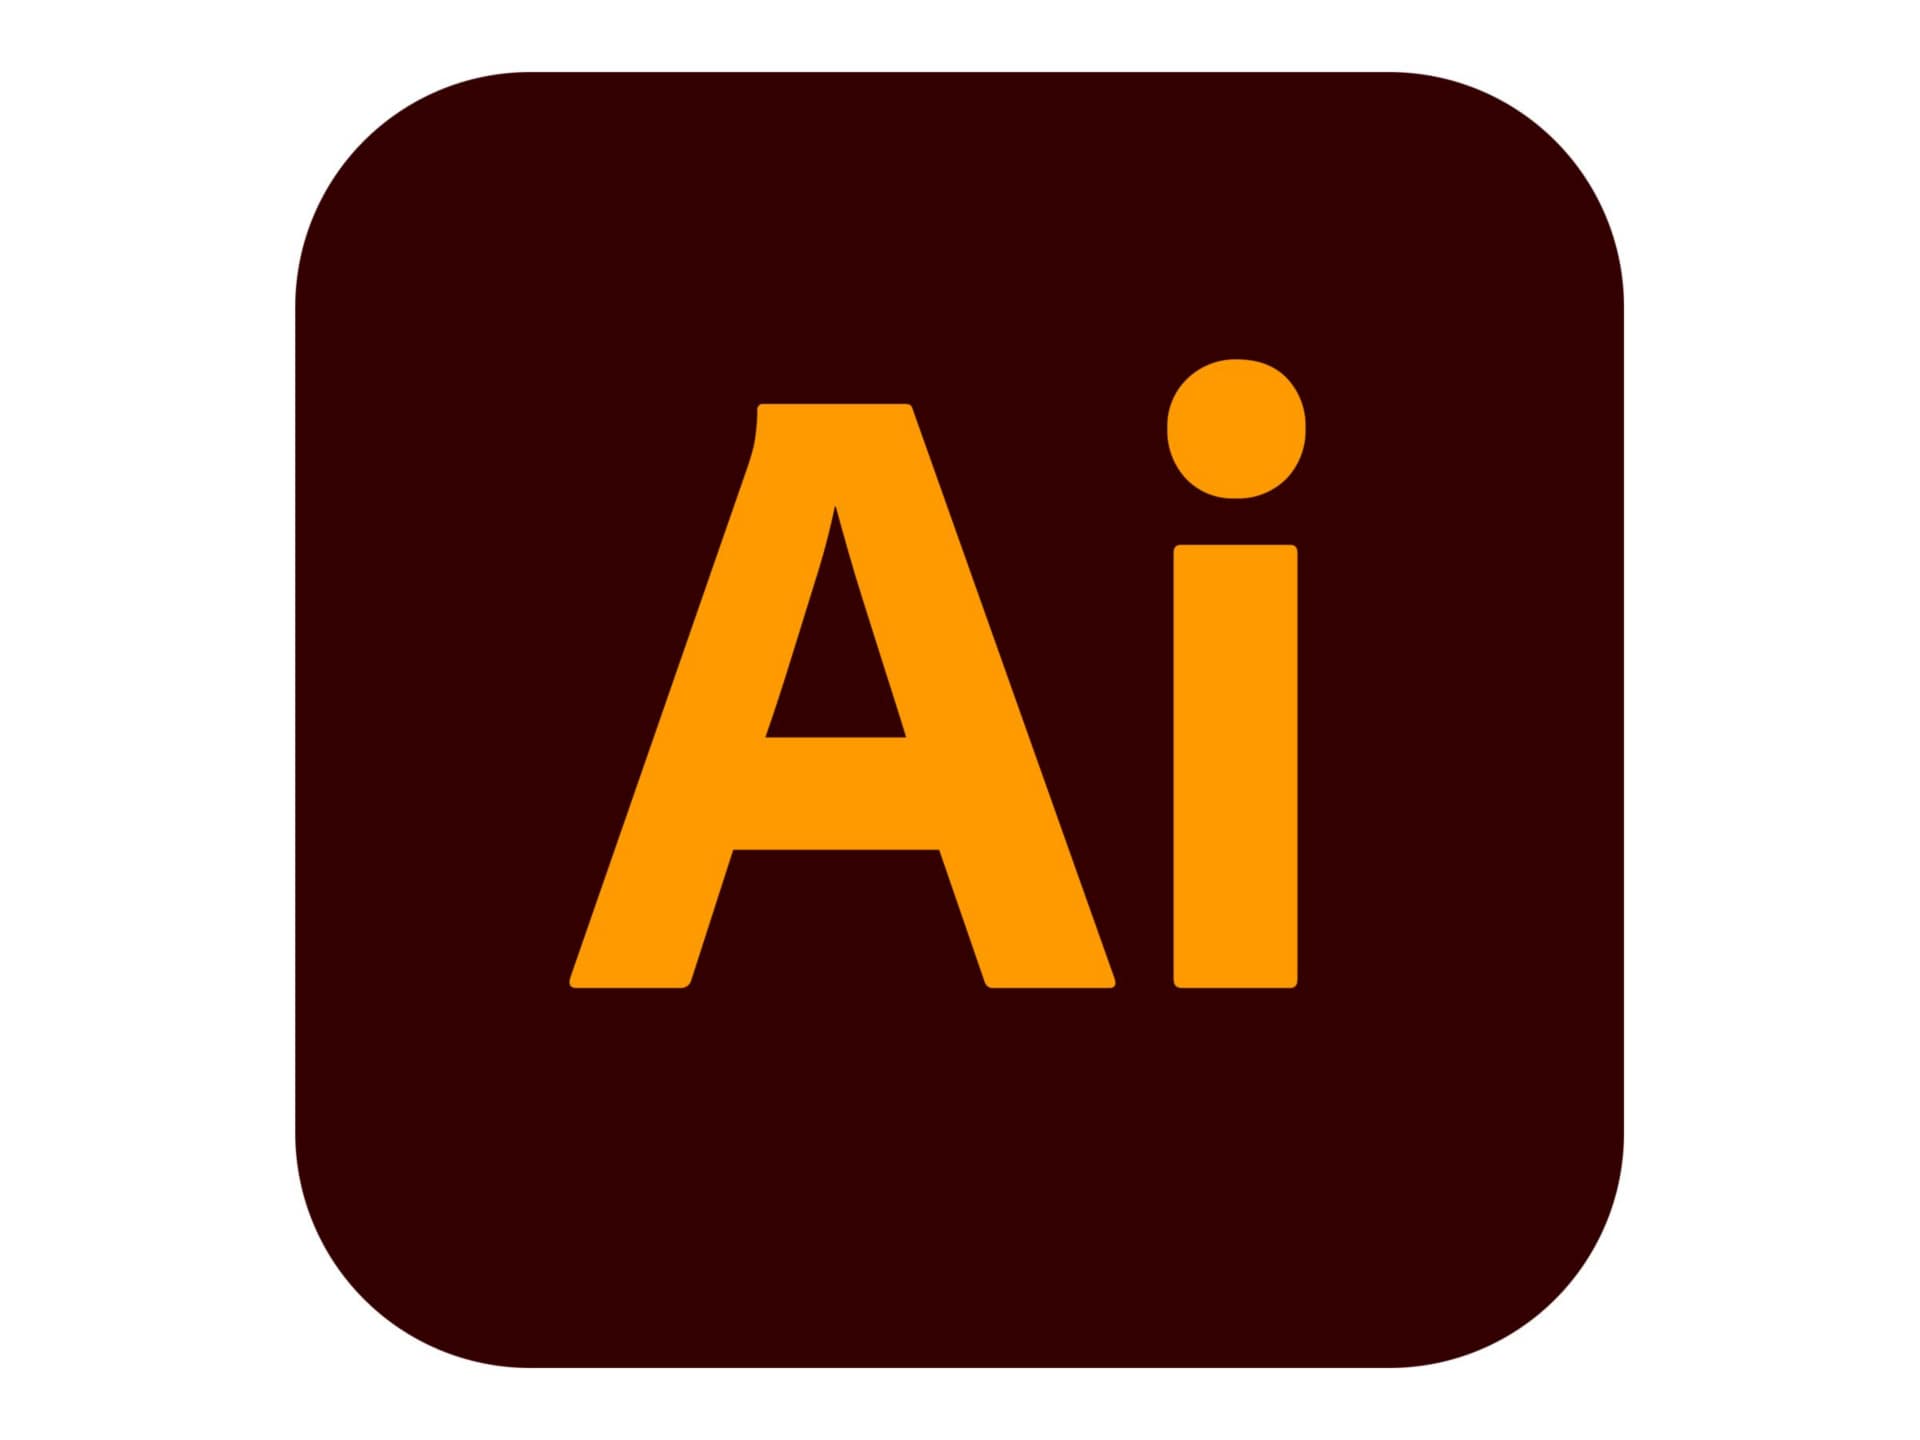 Adobe Illustrator for enterprise - Subscription New (annual) - 1 user